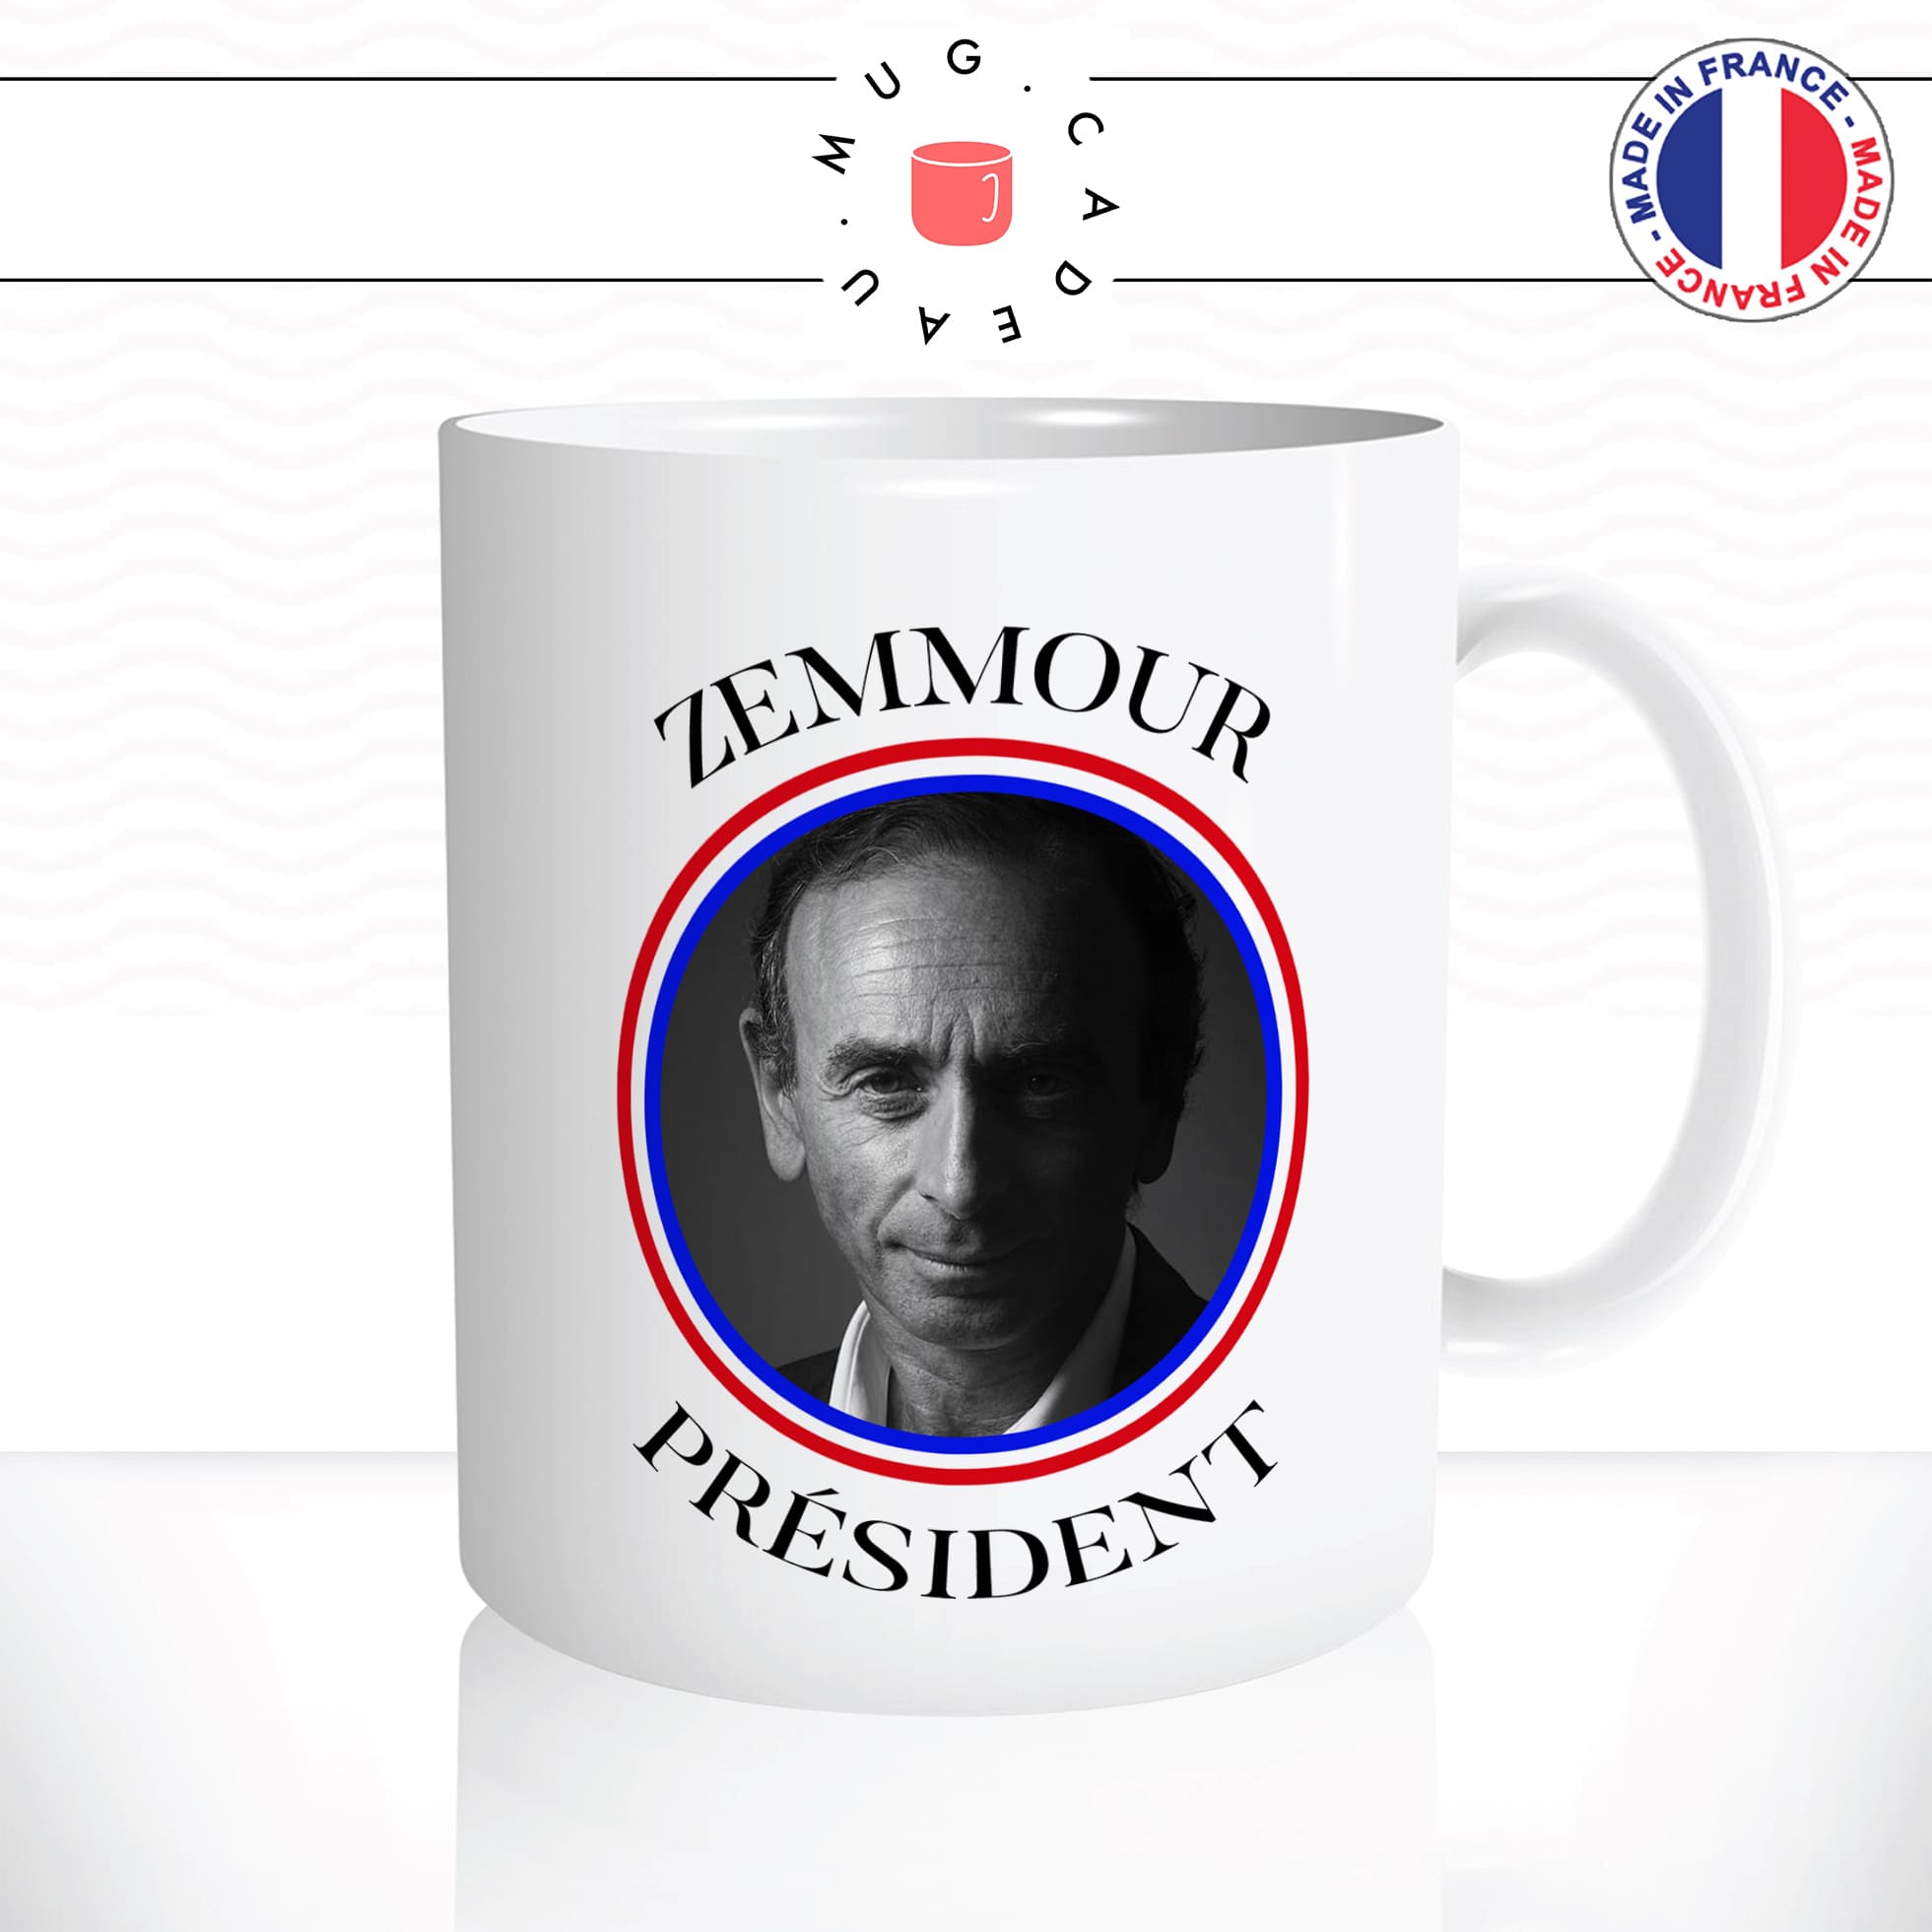 mug-tasse-blanc-brillant-zemmour-president-drapeau-francais-france-bleu-blanc-rouge-candidat-elections-idée-cadeau-originale-fun-unique2